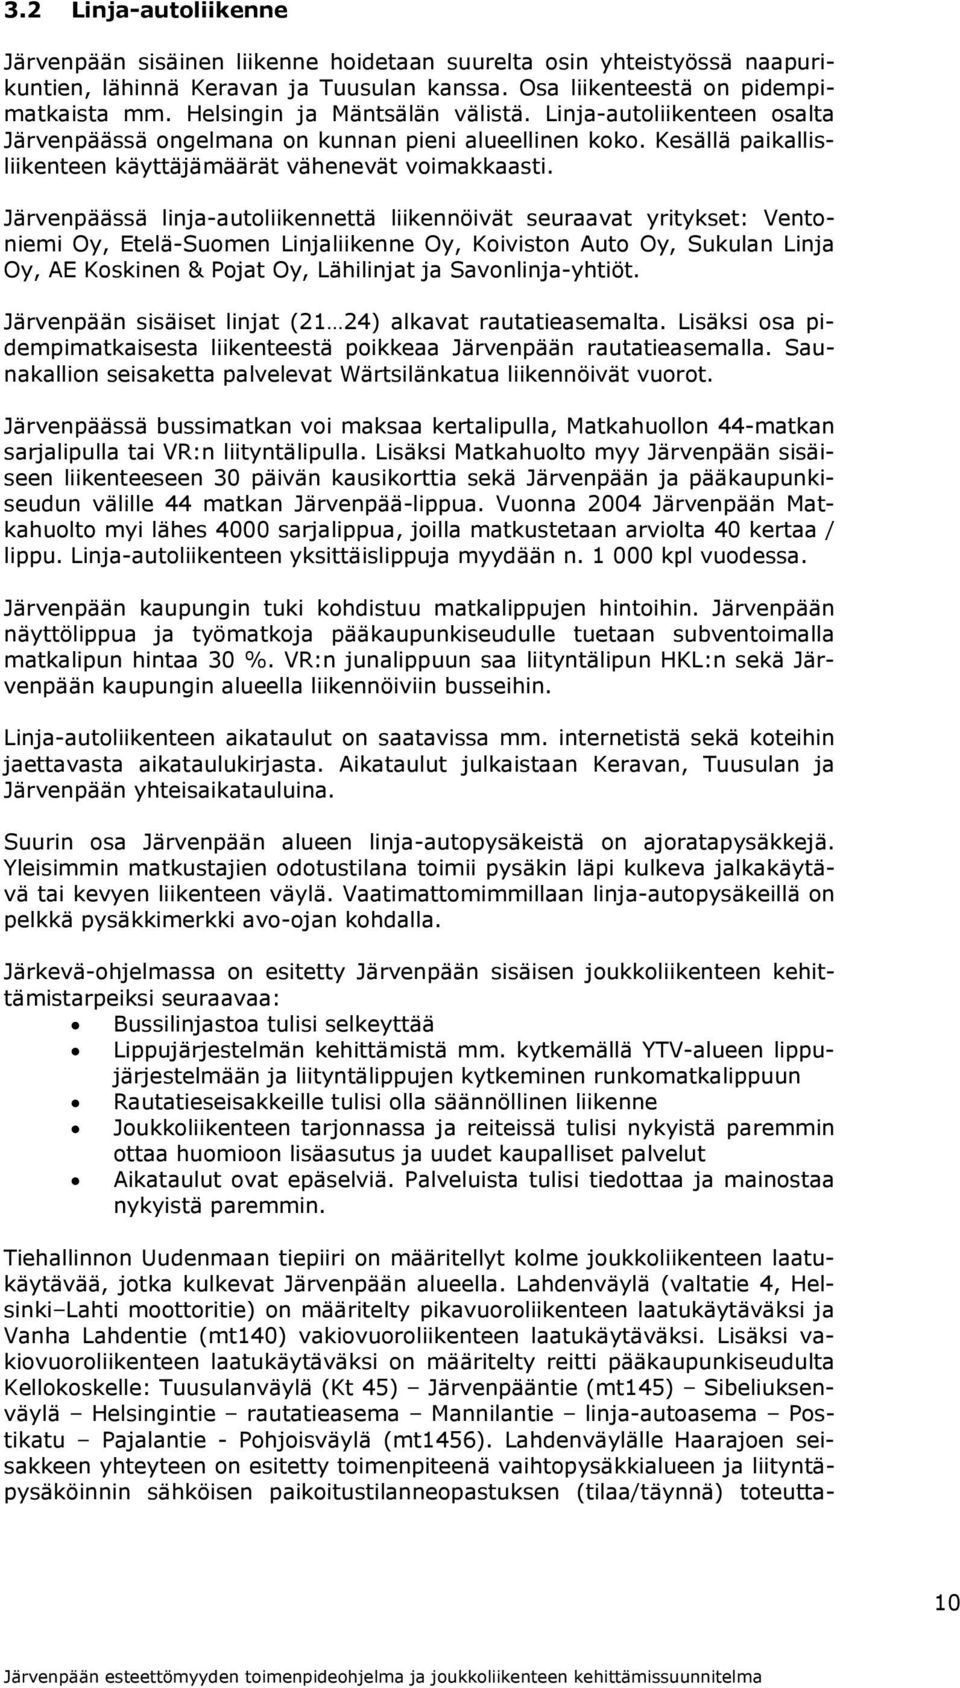 Järvenpäässä linja-autoliikennettä liikennöivät seuraavat yritykset: Ventoniemi Oy, Etelä-Suomen Linjaliikenne Oy, Koiviston Auto Oy, Sukulan Linja Oy, AE Koskinen & Pojat Oy, Lähilinjat ja